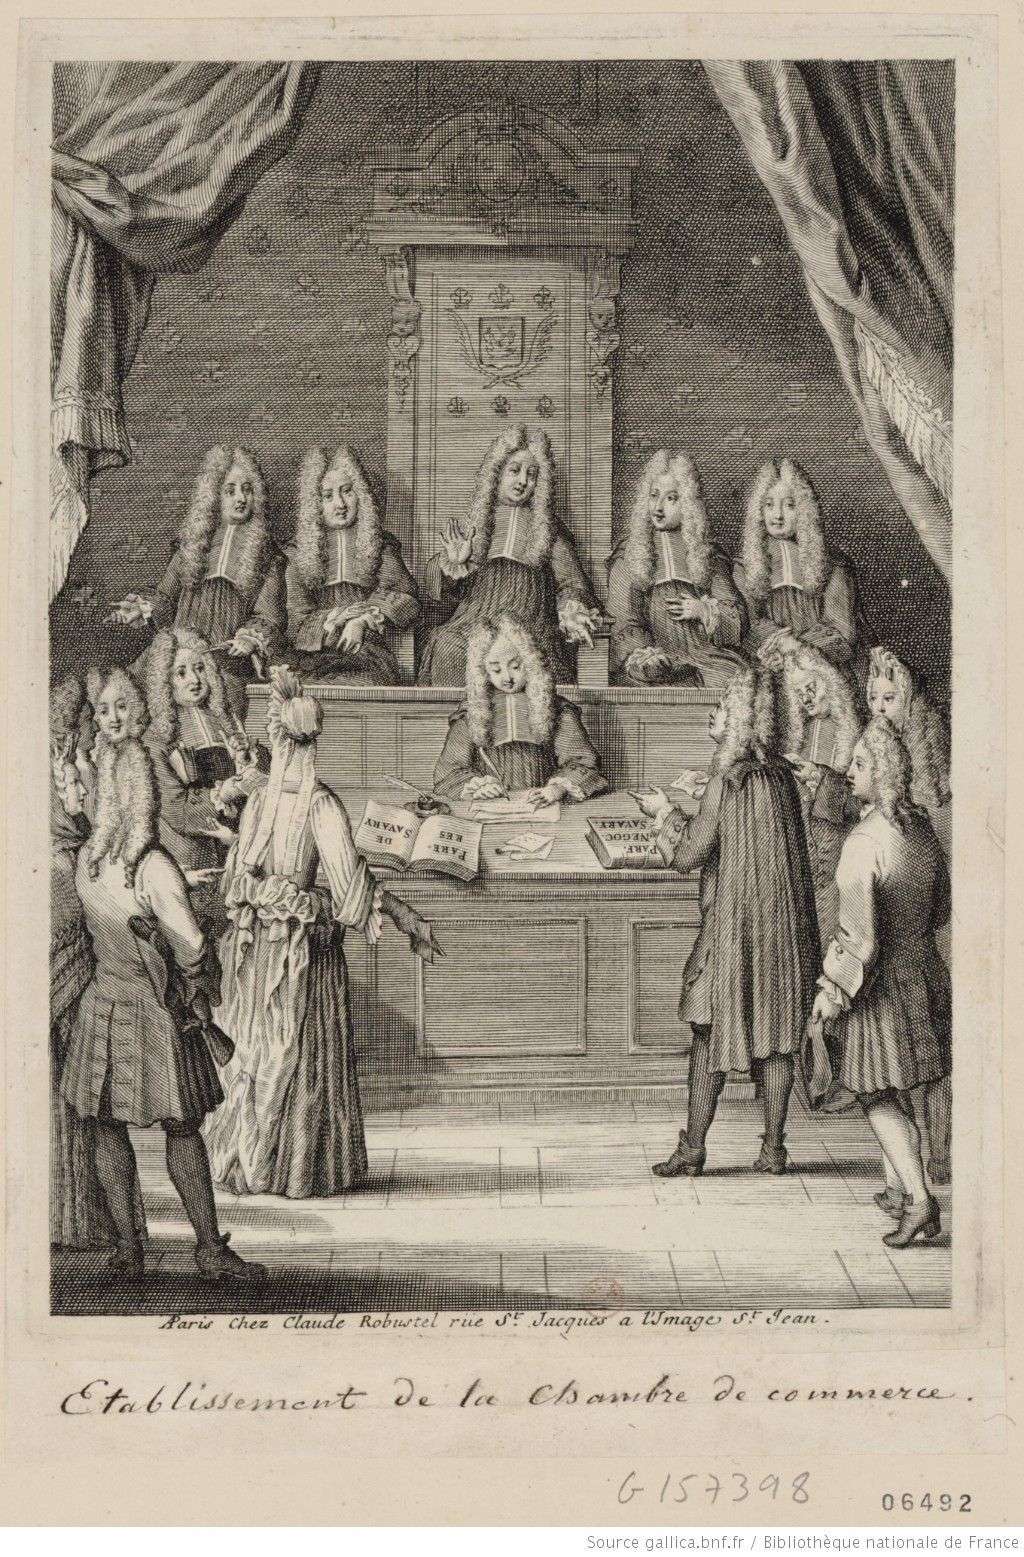 Etablissement de la Chambre de Commerce, estampe, Paris, Claude Robustel, vers 1700, BNF.